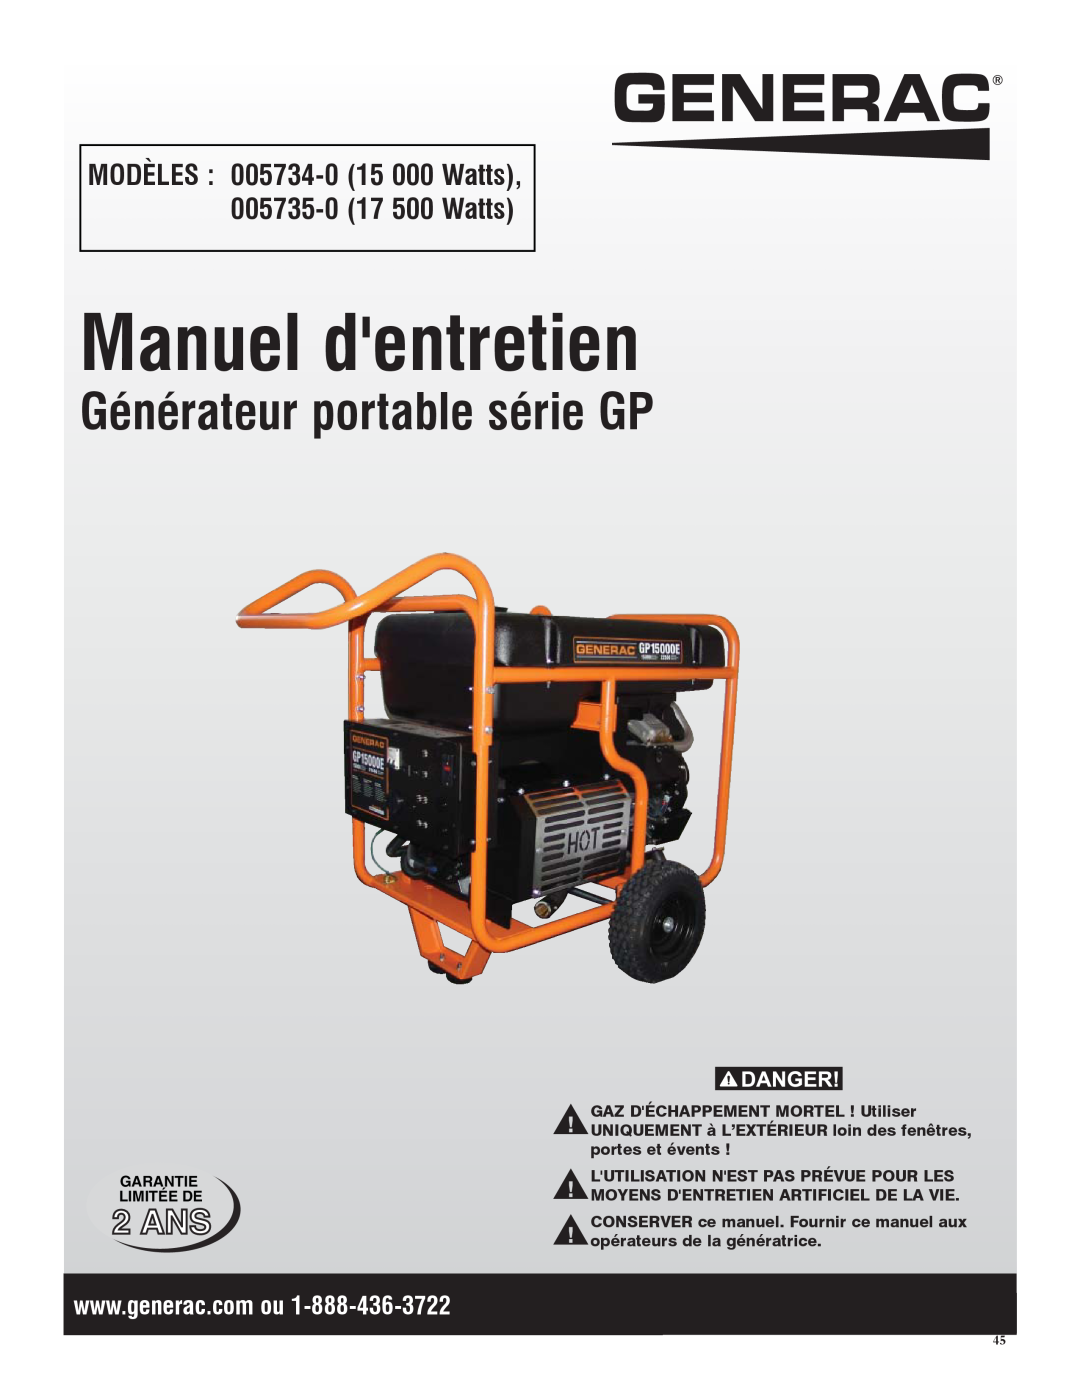 Generac Manuel dentretien, Générateur portable série GP, MODÈLES 005734-0 15 000 Watts, 005735-0 17 500 Watts, 2 ANS 